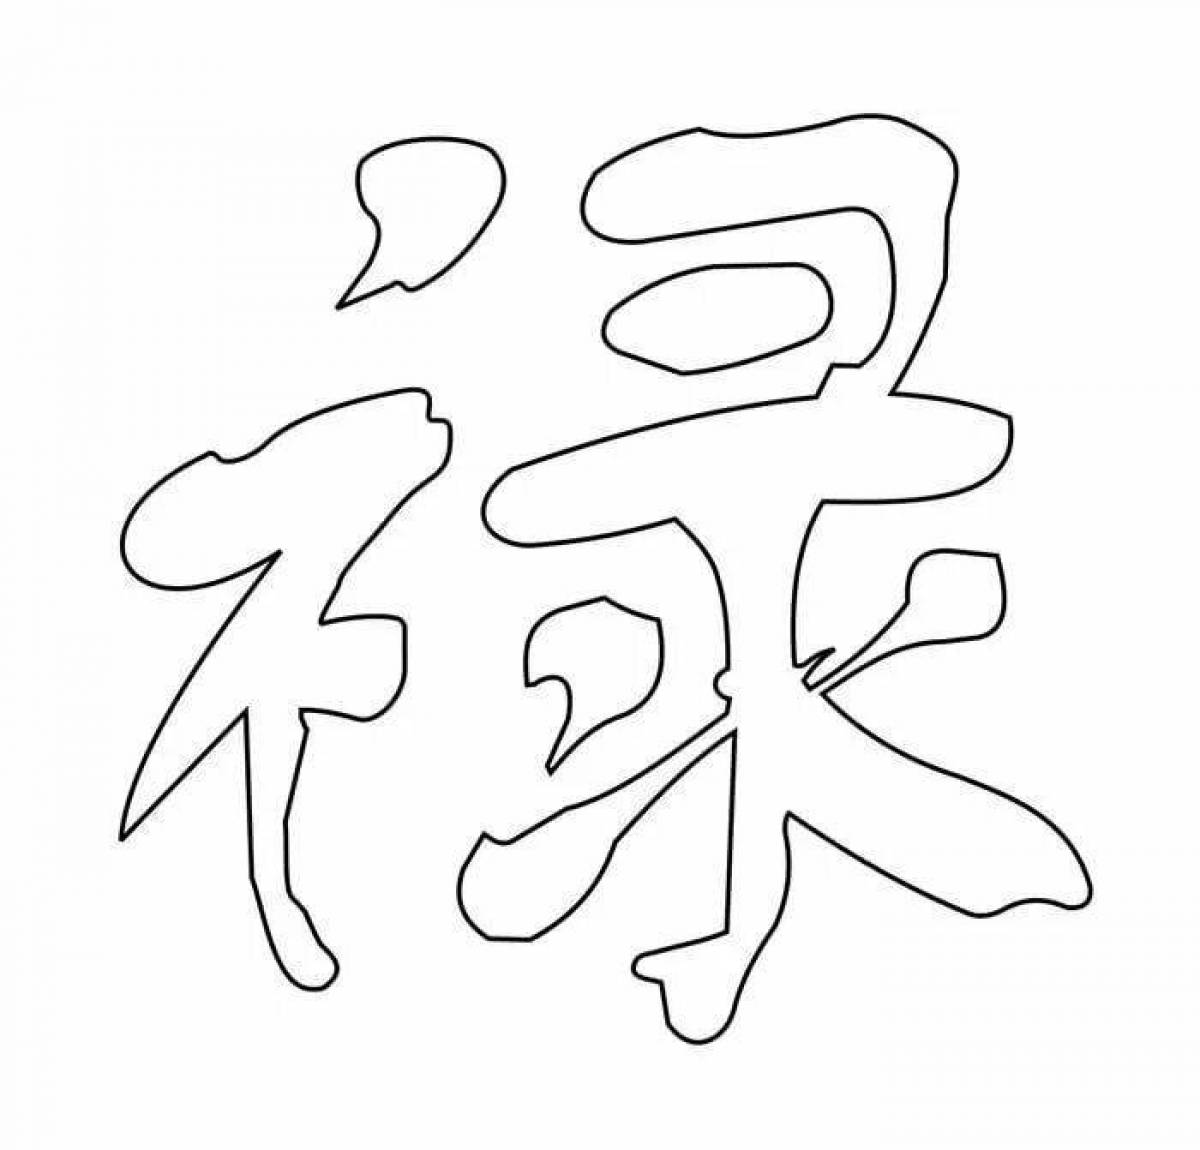 Творческая страница раскраски китайских иероглифов